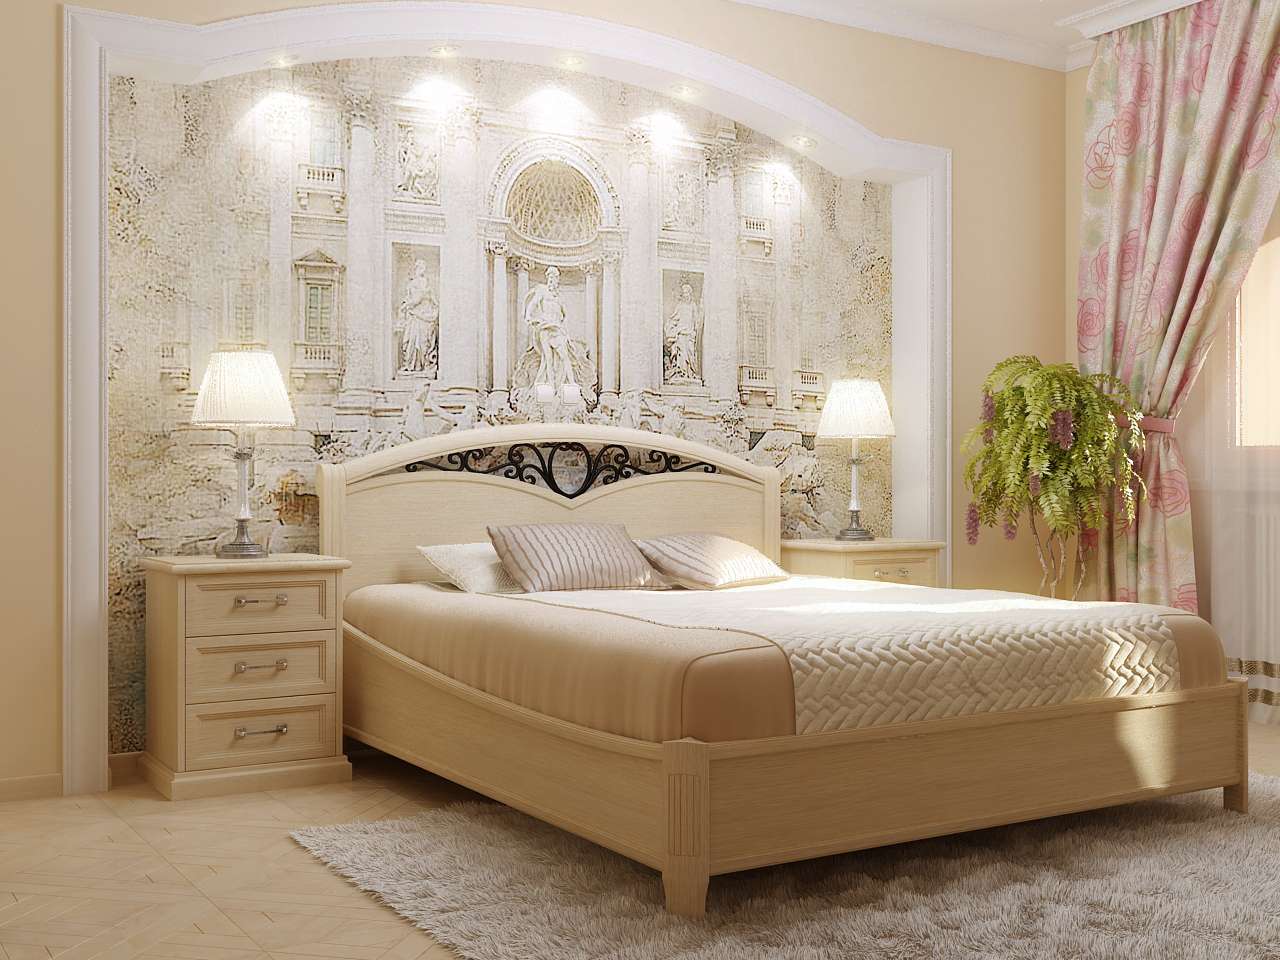 Как подобрать кровати в стиле классика для спальни